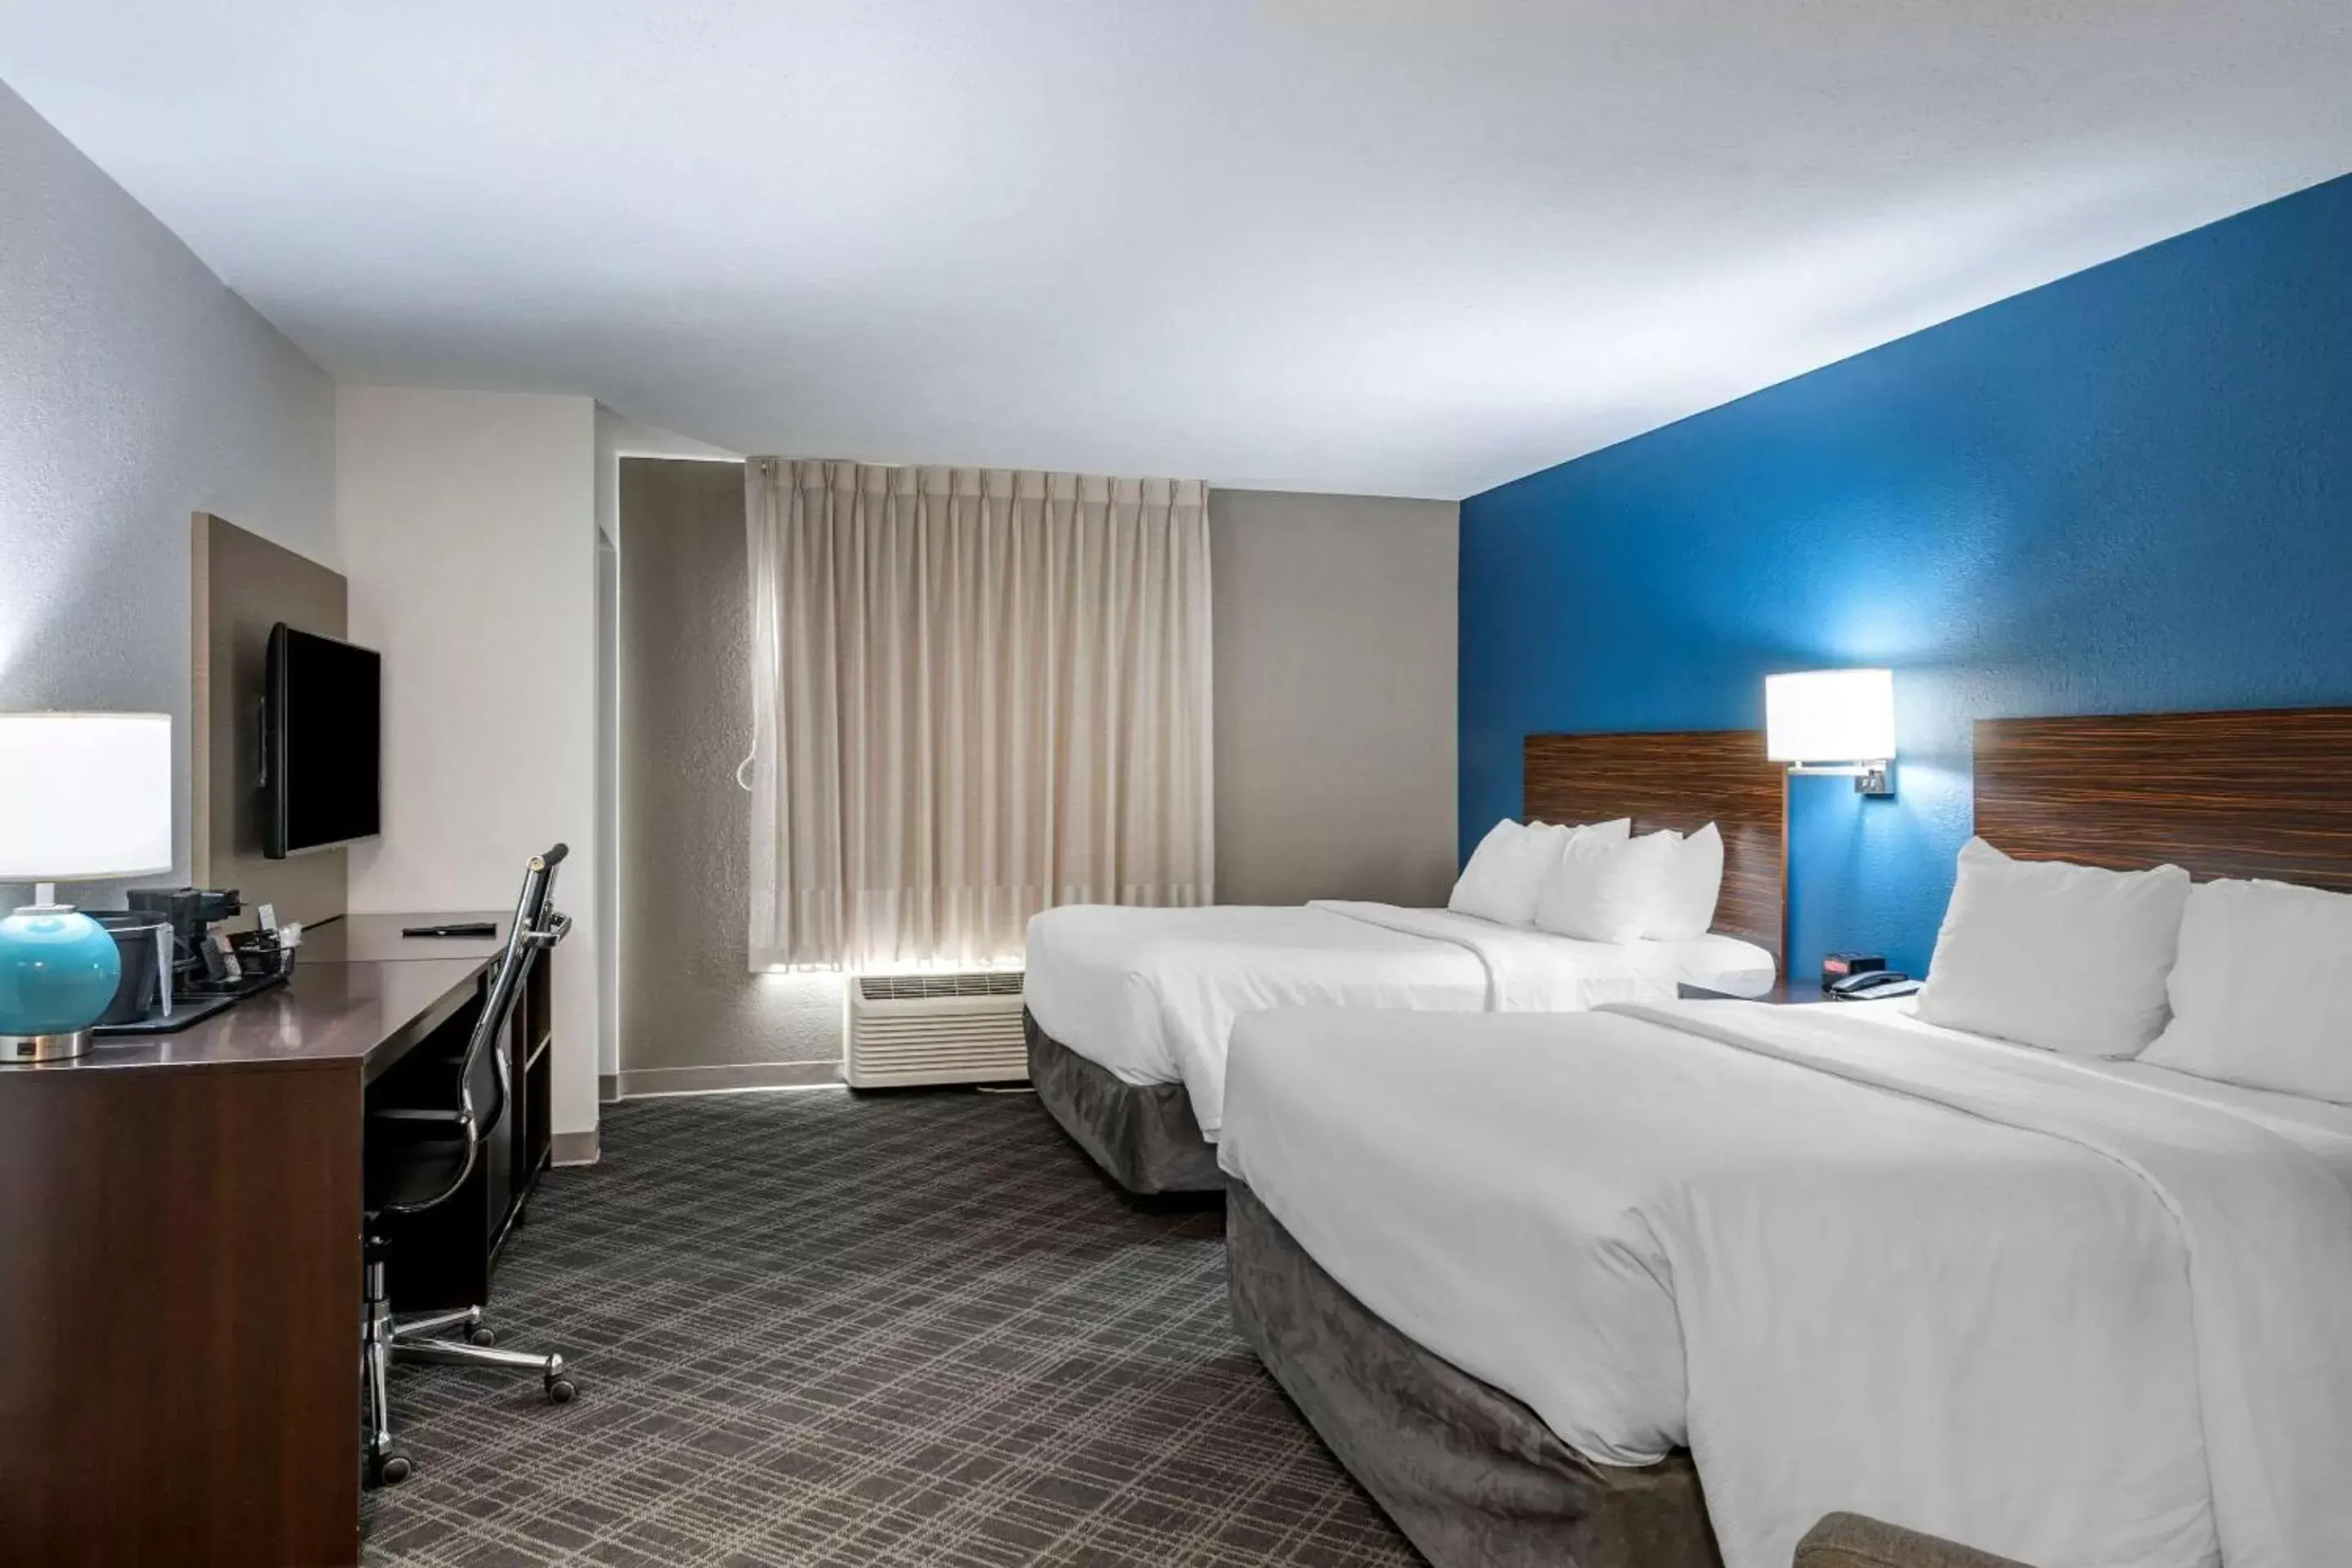 Bedroom, Bed in Comfort Inn St Louis - Airport